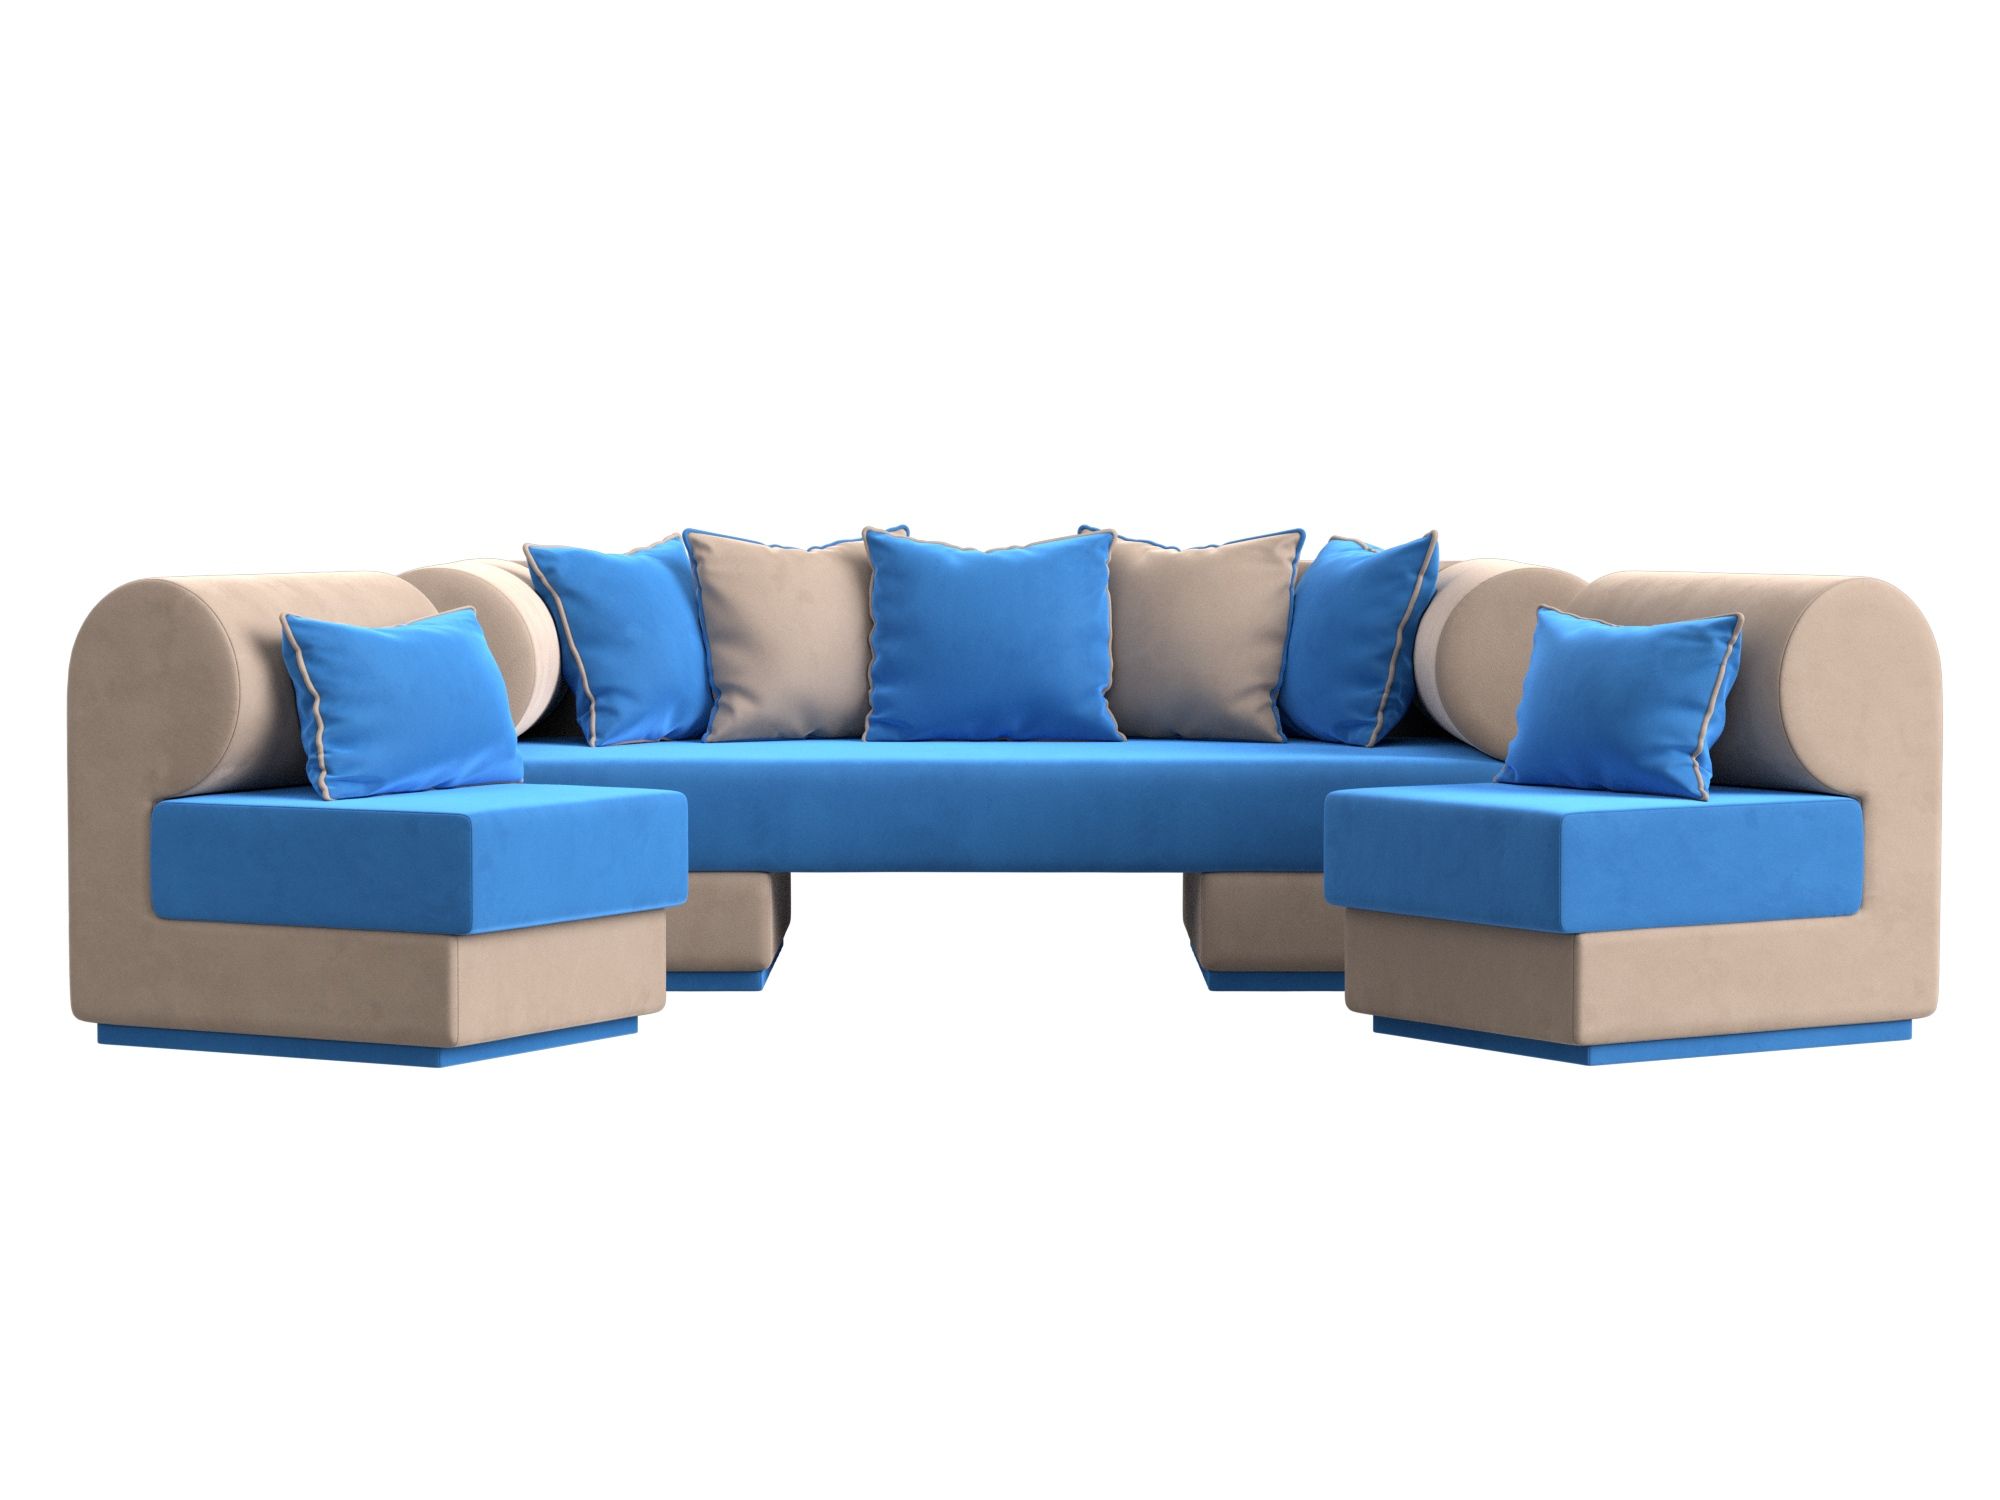 Набор «Кипр-3» (диван, 2 кресла) голубой\бежевый, Велюр велюр голубо��бежевый купить от 99970 руб. в интернет-магазине Фабрики PUSHE в Москве